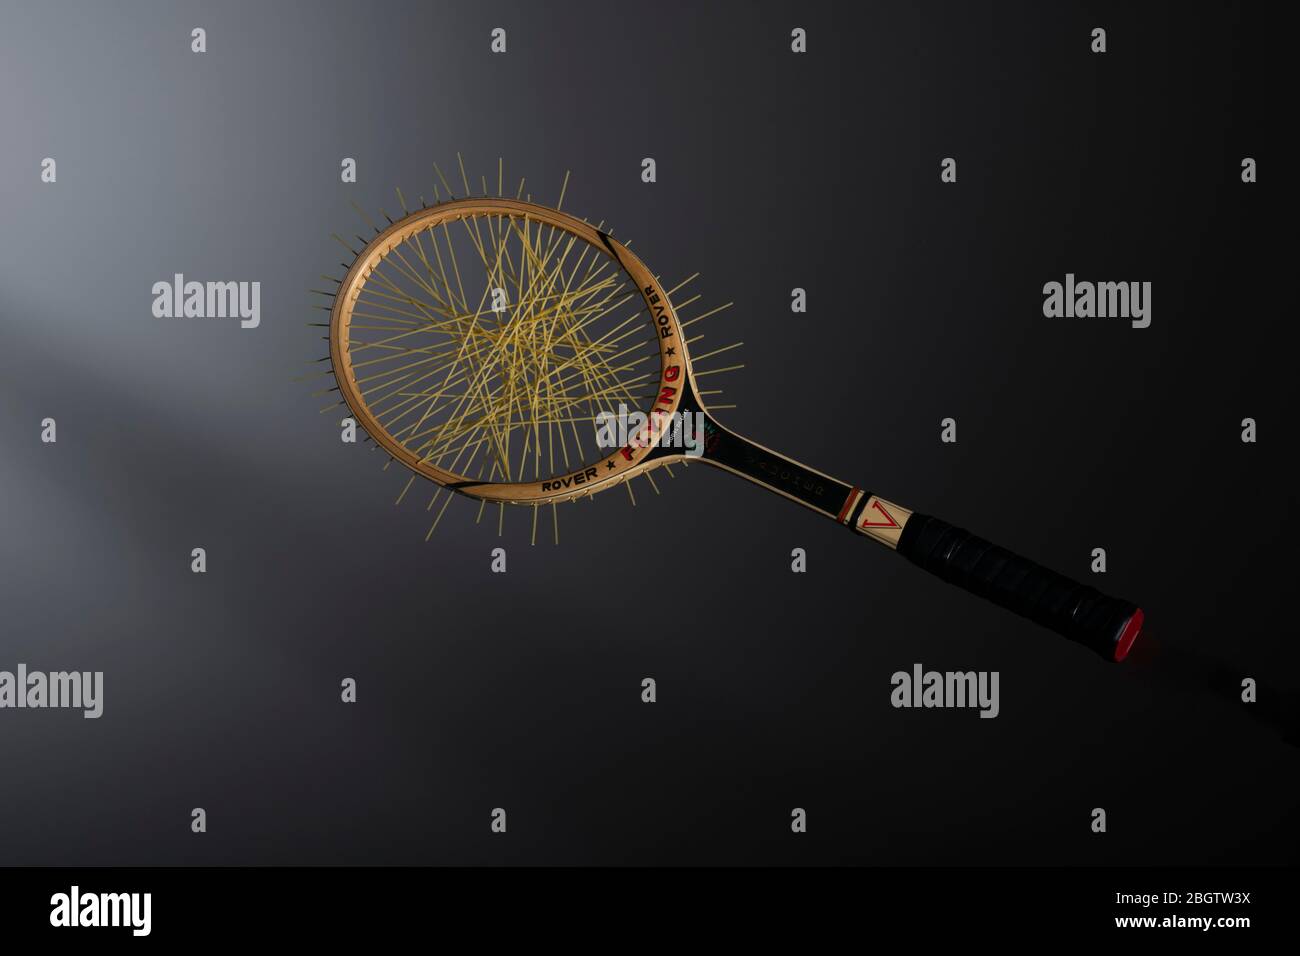 Racchetta da tennis in legno con corde di spaghetti; immagine alimentare concettuale Foto Stock